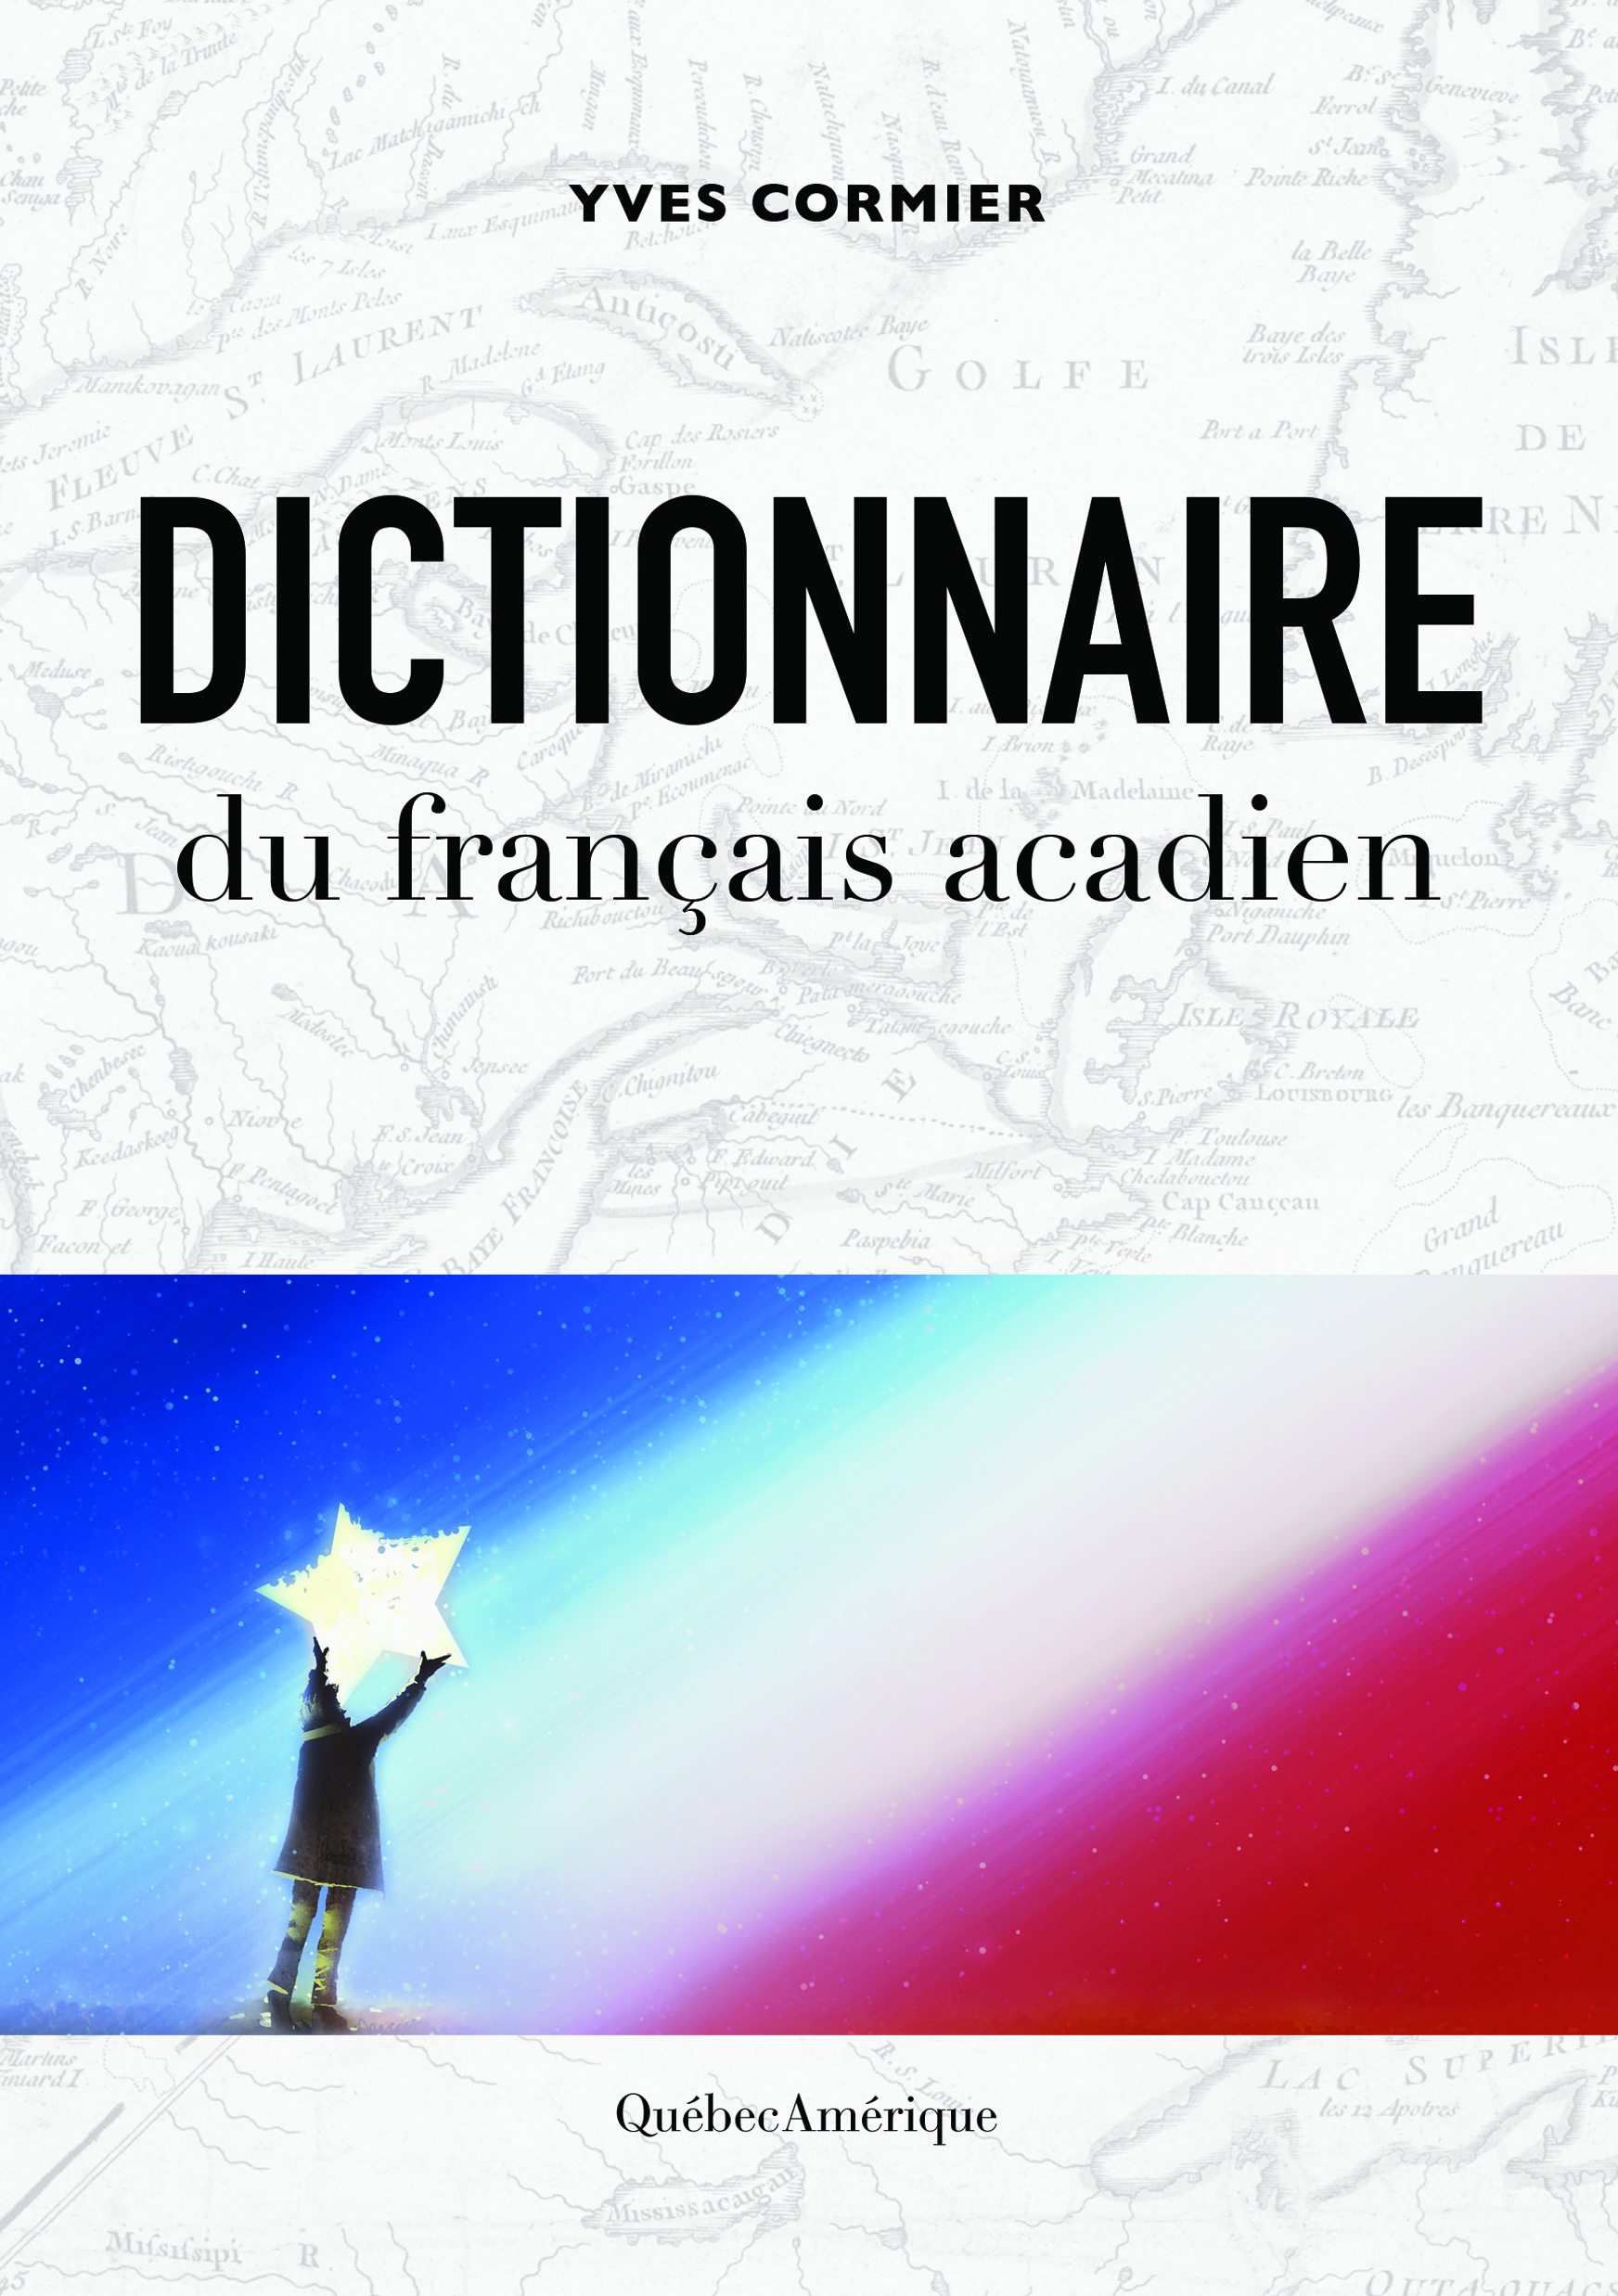 Le Dictionnaire du français acadien est disponible depuis cette semaine chez Québec Amérique.